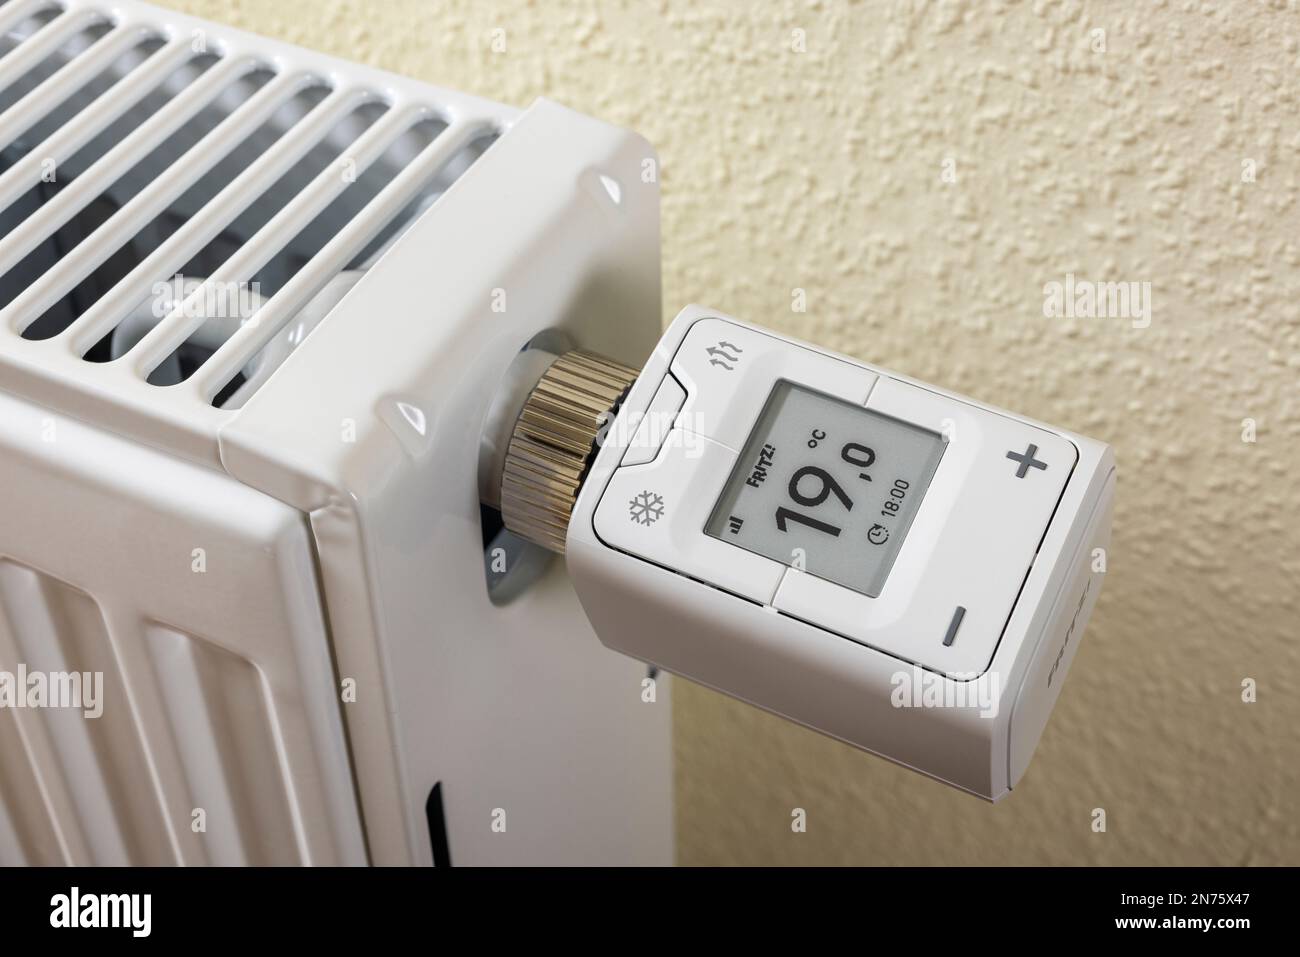 WLAN Heizkörperthermostat FRITZ! DECT 302, Display zeigt 1ö°C an, Smart-Home-Technologie, Symbolbild, Netzwerk, Digital, Energiekosten, steigende Heizkosten, Stockfoto